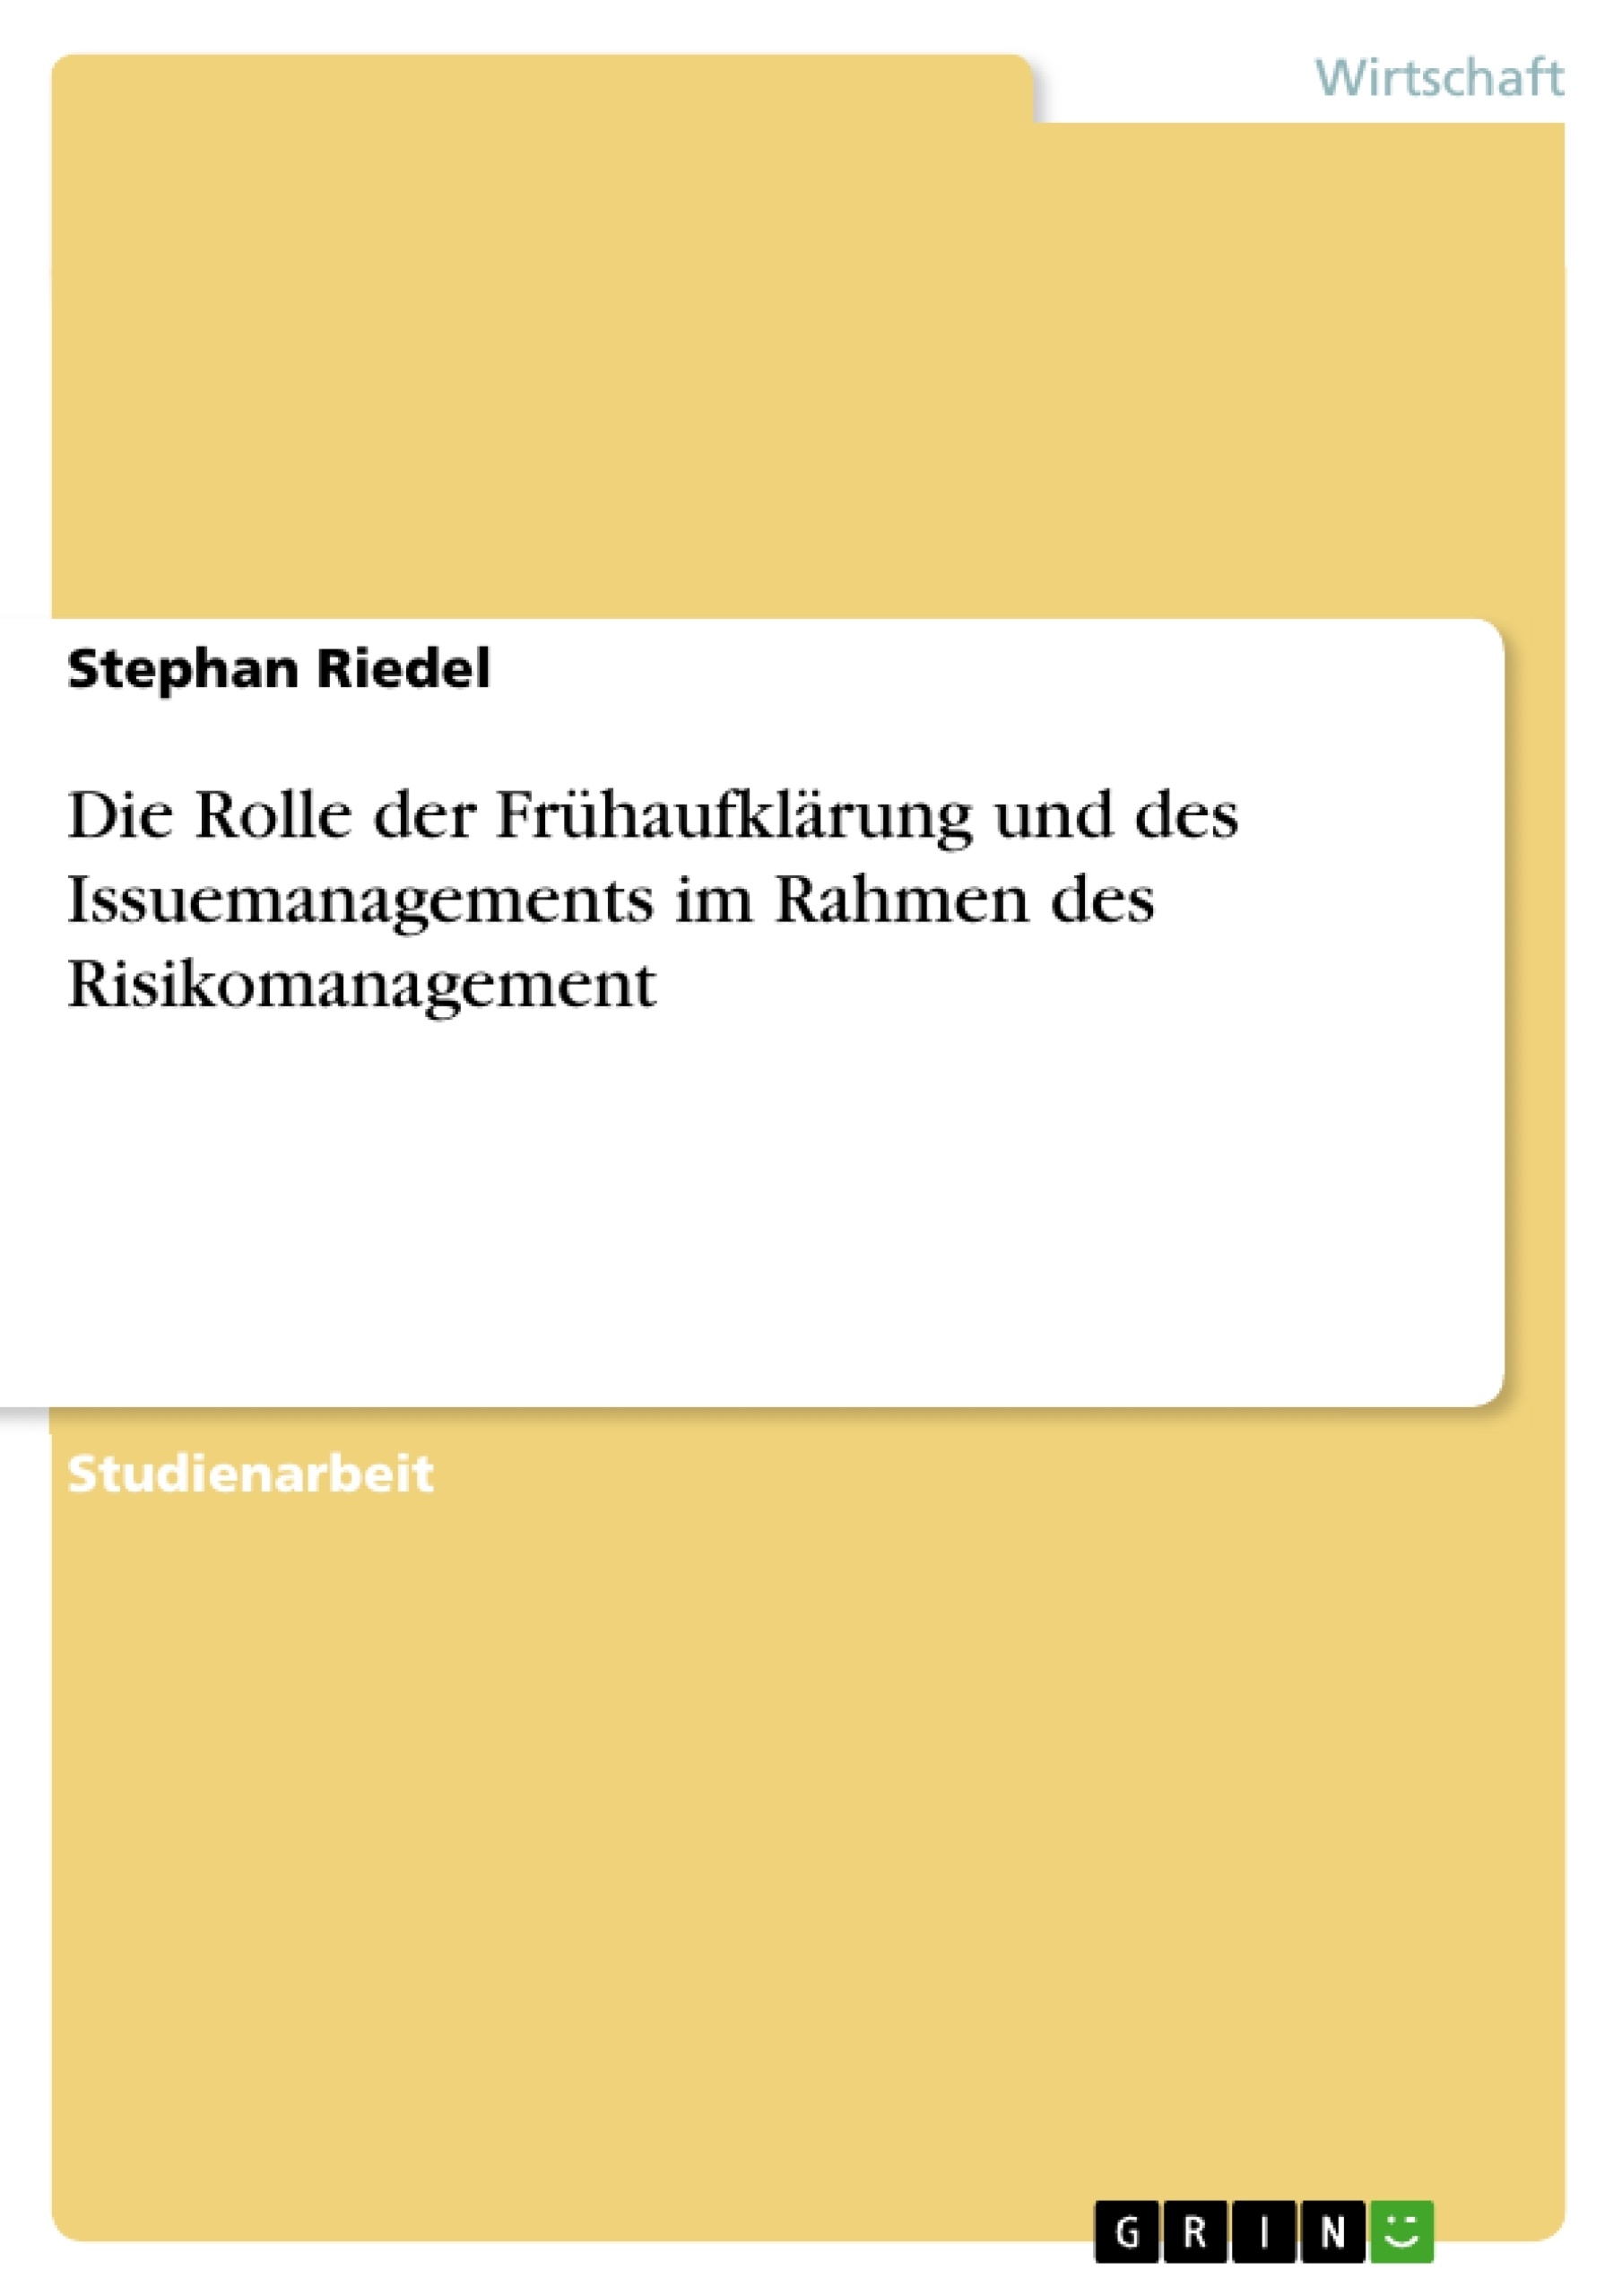 Title: Die Rolle der Frühaufklärung und des Issuemanagements im Rahmen des Risikomanagement